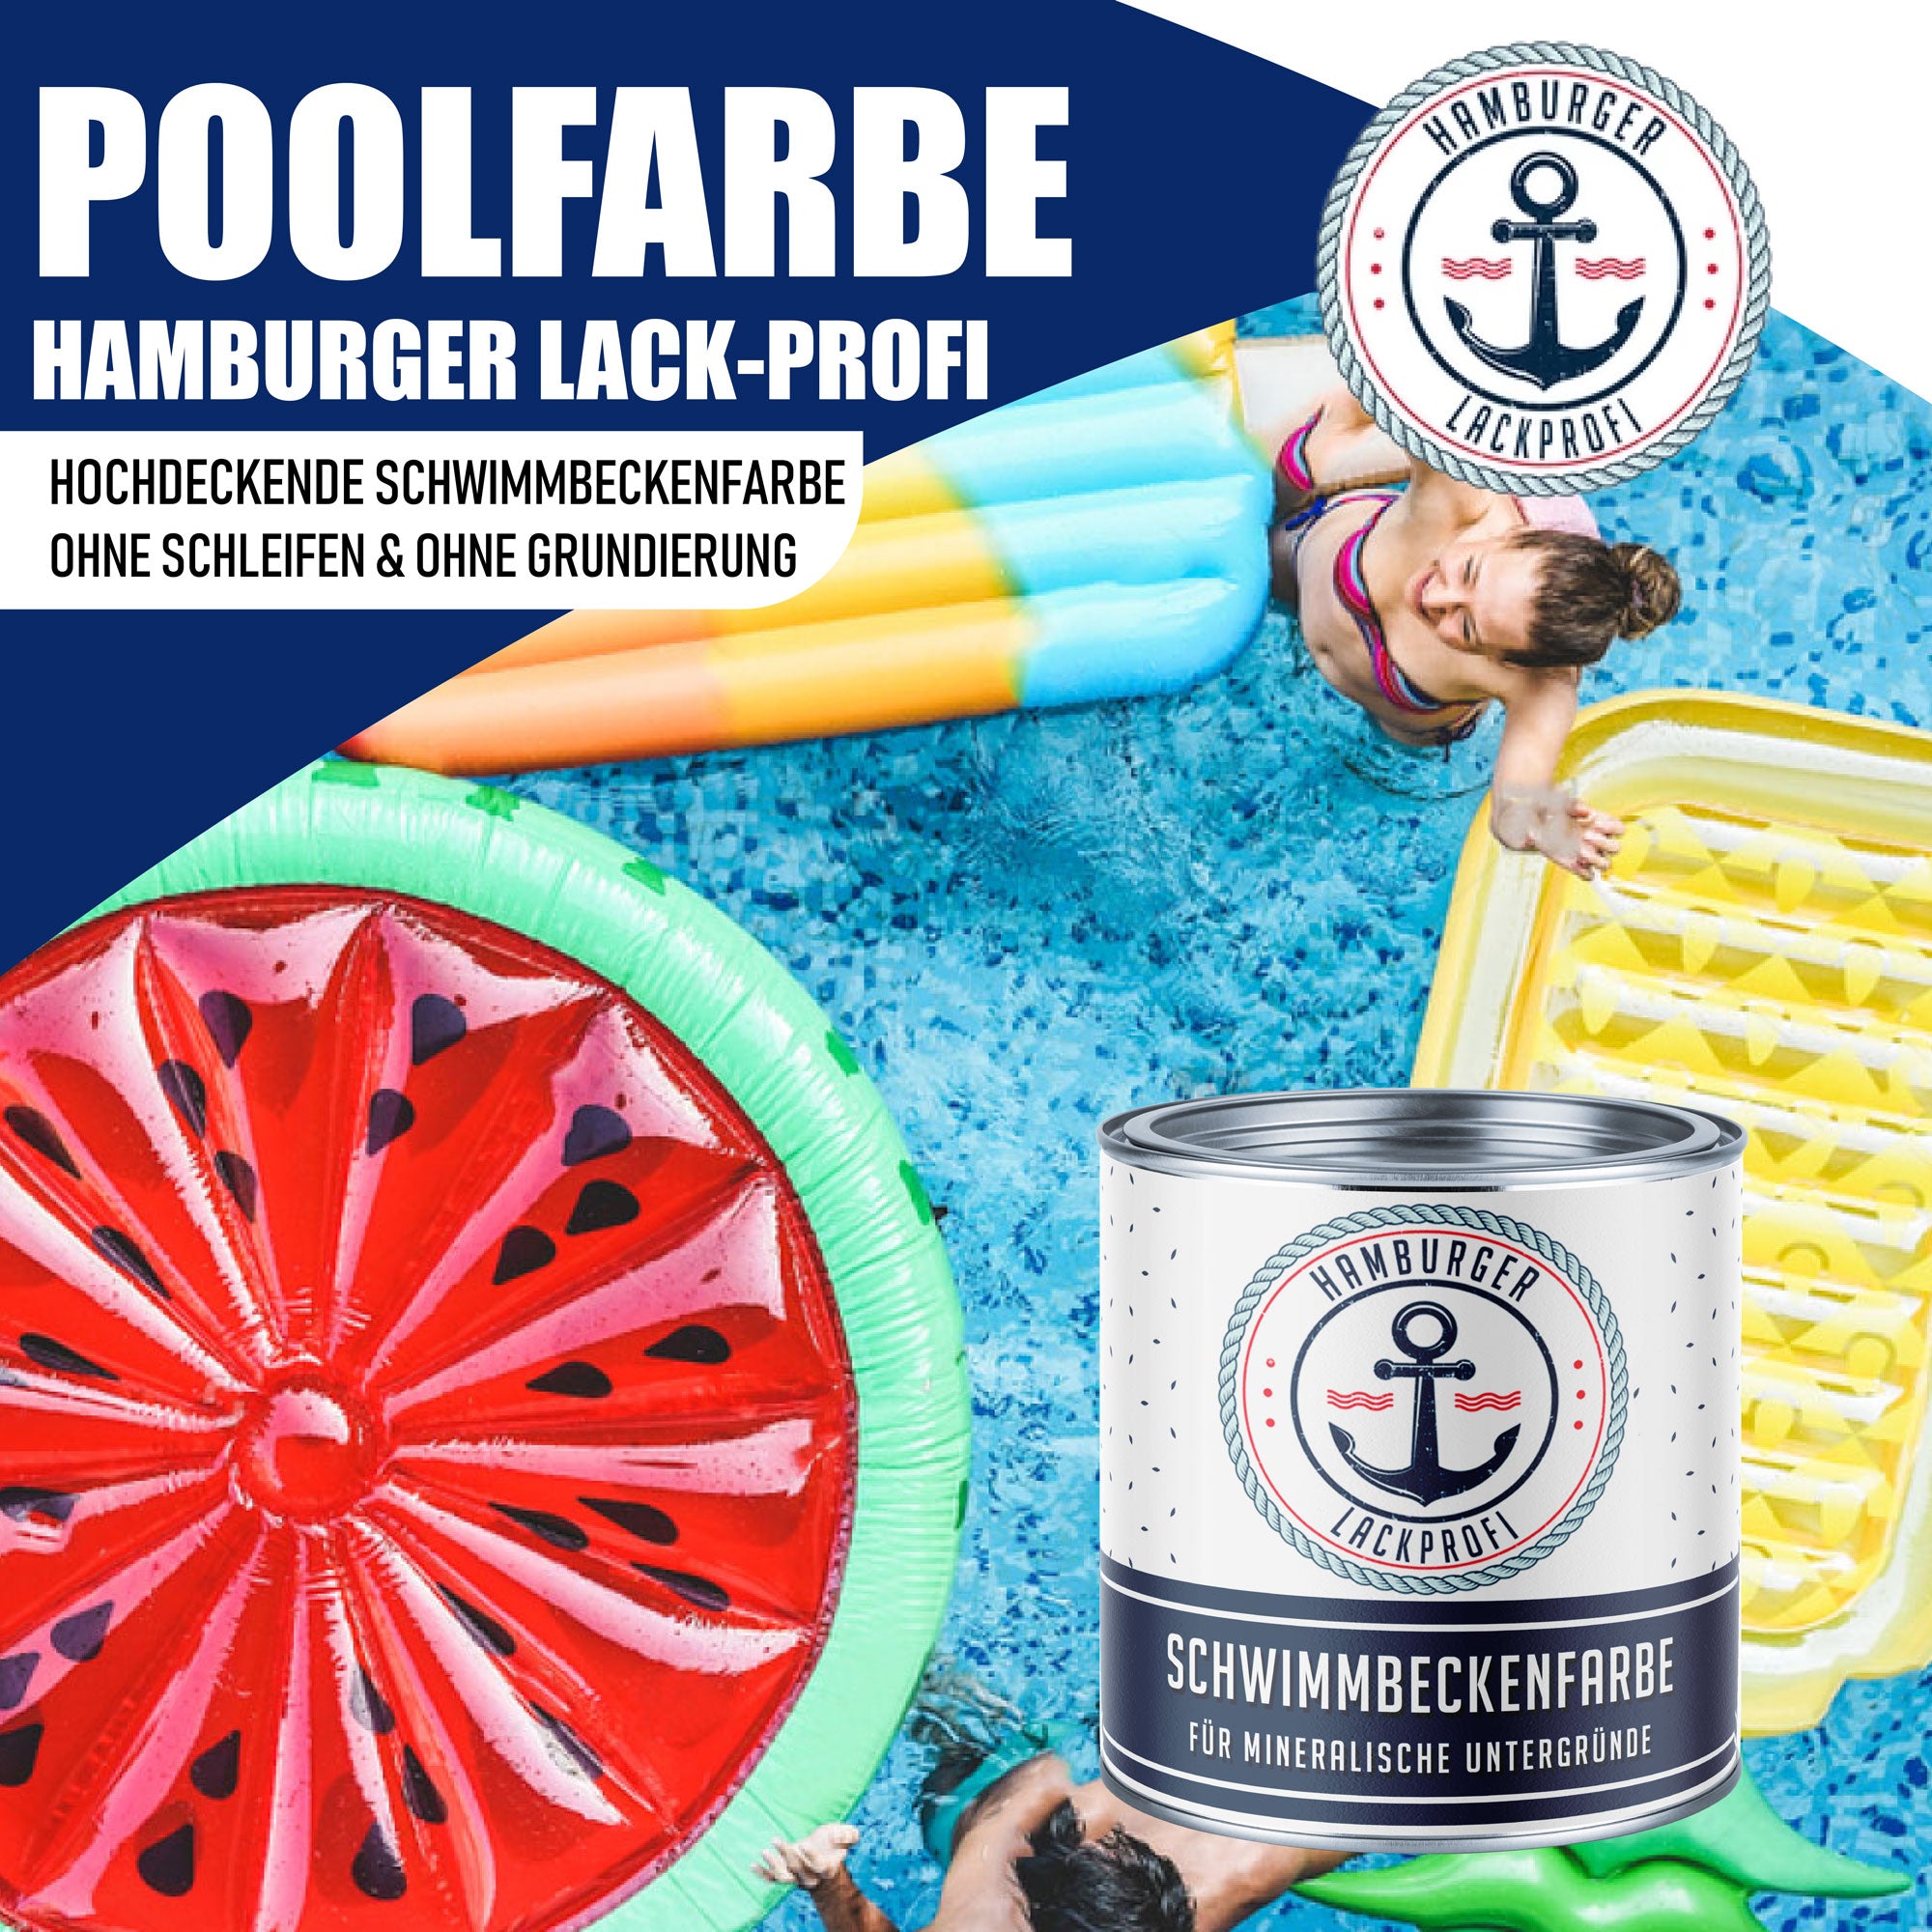 Hamburger Lack-Profi Schwimmbeckenfarbe Dahliengelb RAL 1033 - hochdeckende Poolfarbe